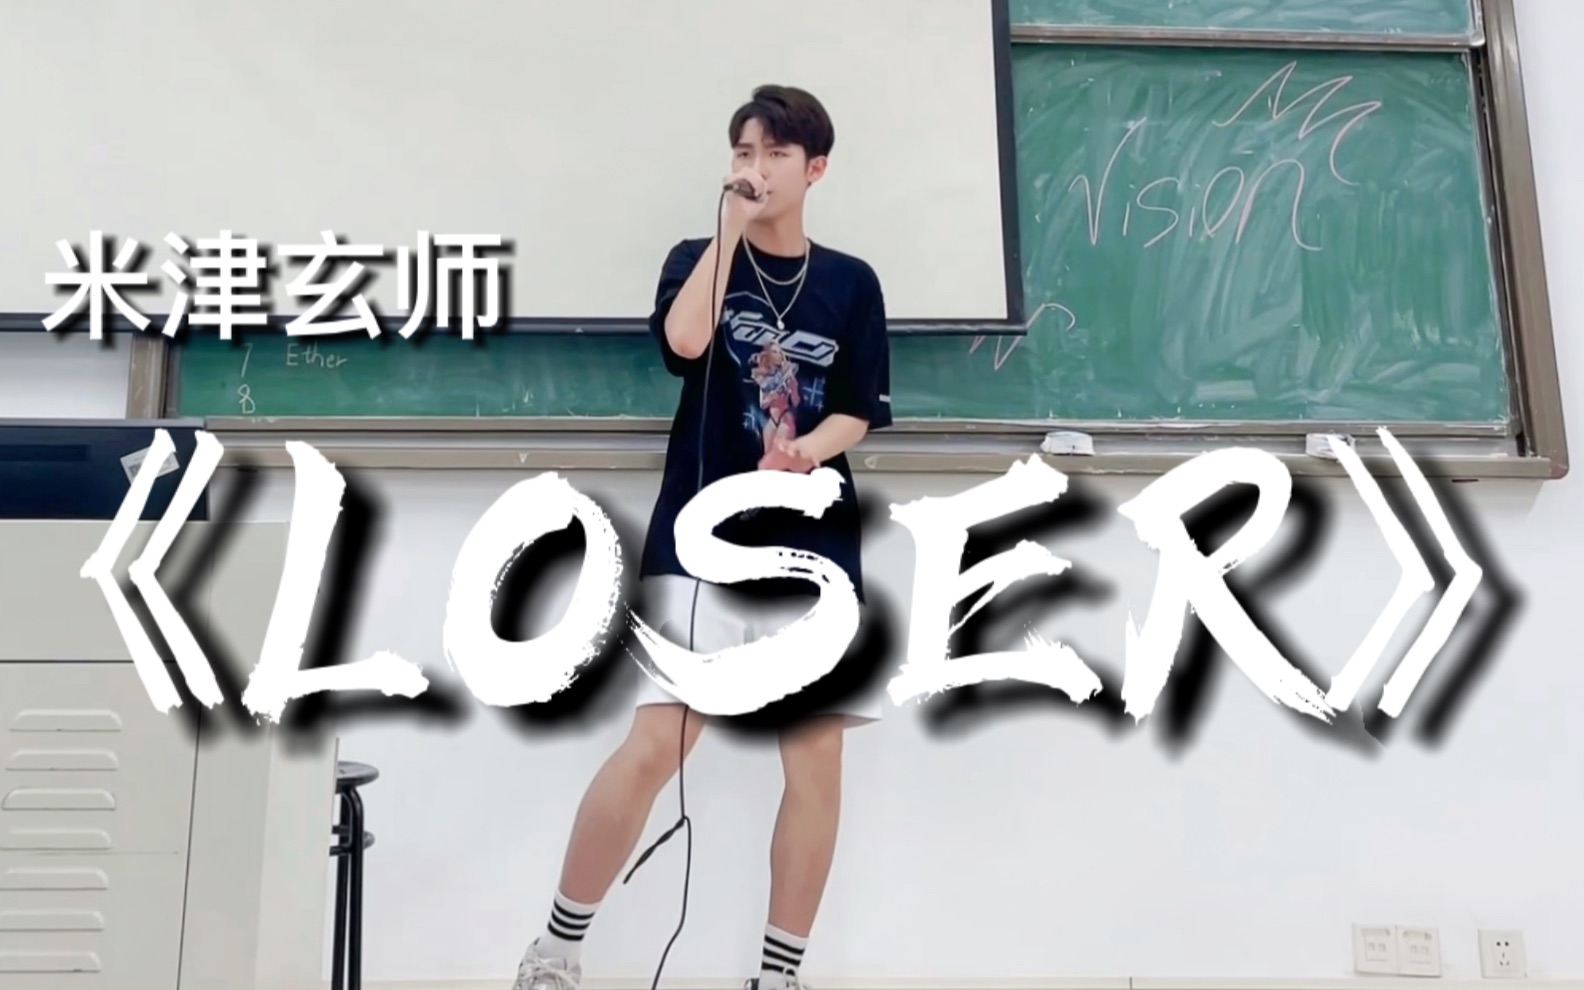 卧槽?!!同学在教室唱《Loser》开口直接震惊!!!